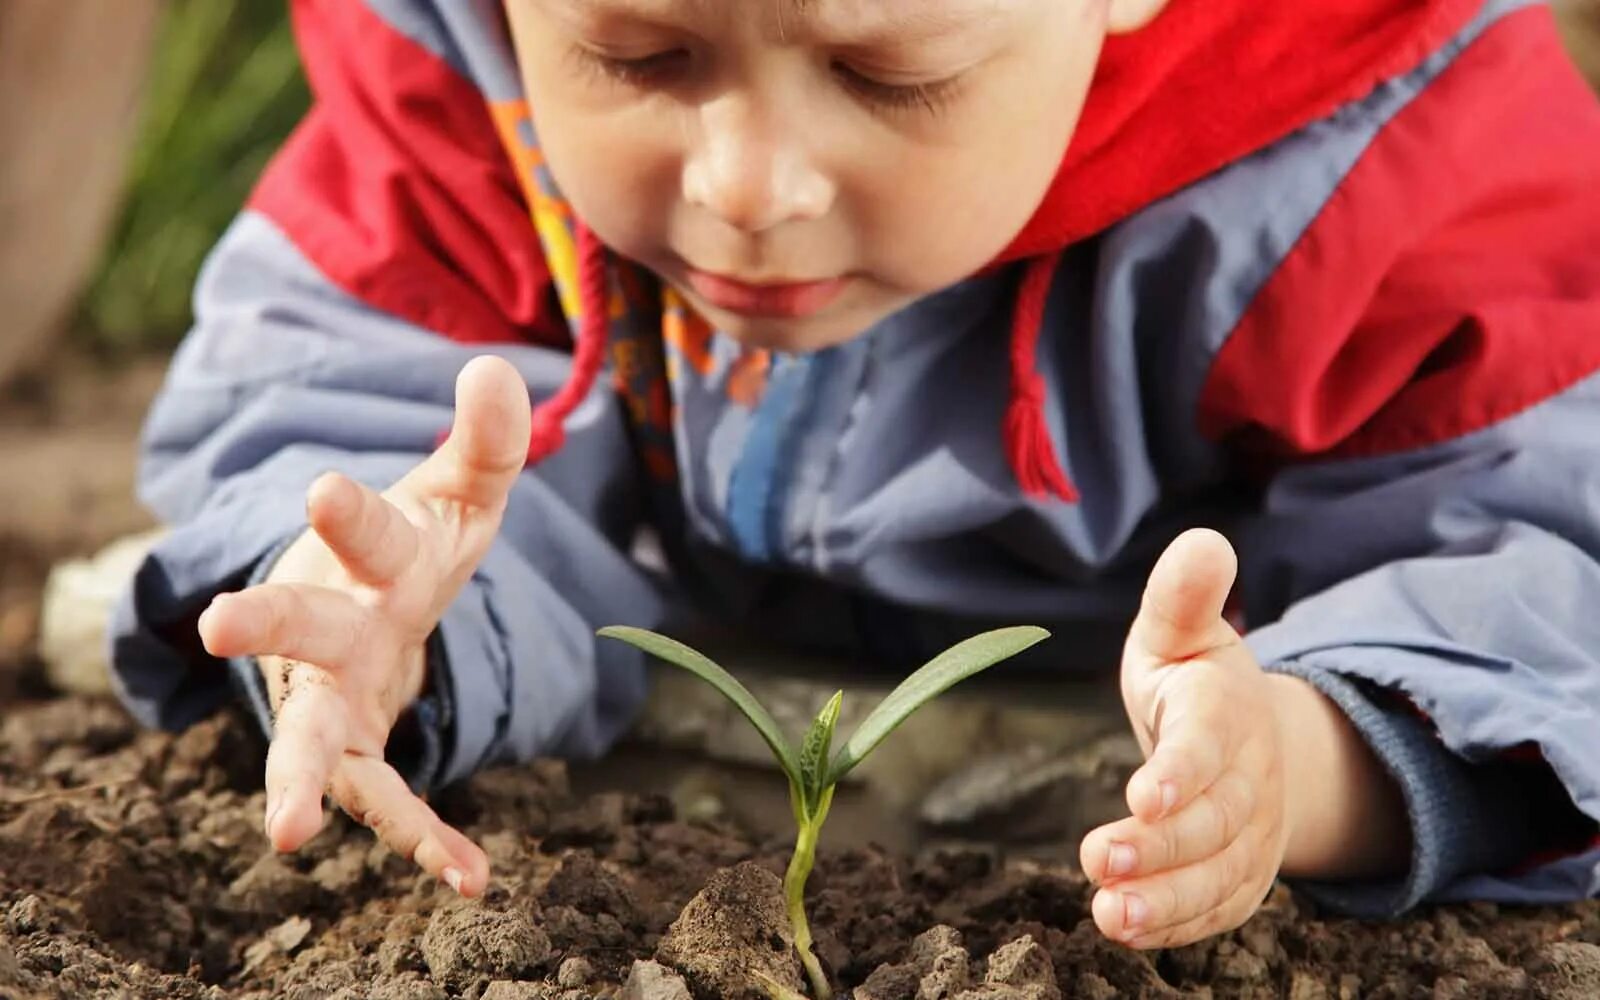 Заботящаяся почва. Почва для детей. Ребенок с росточками в руках. Изучение природы. Природа для дошкольников.